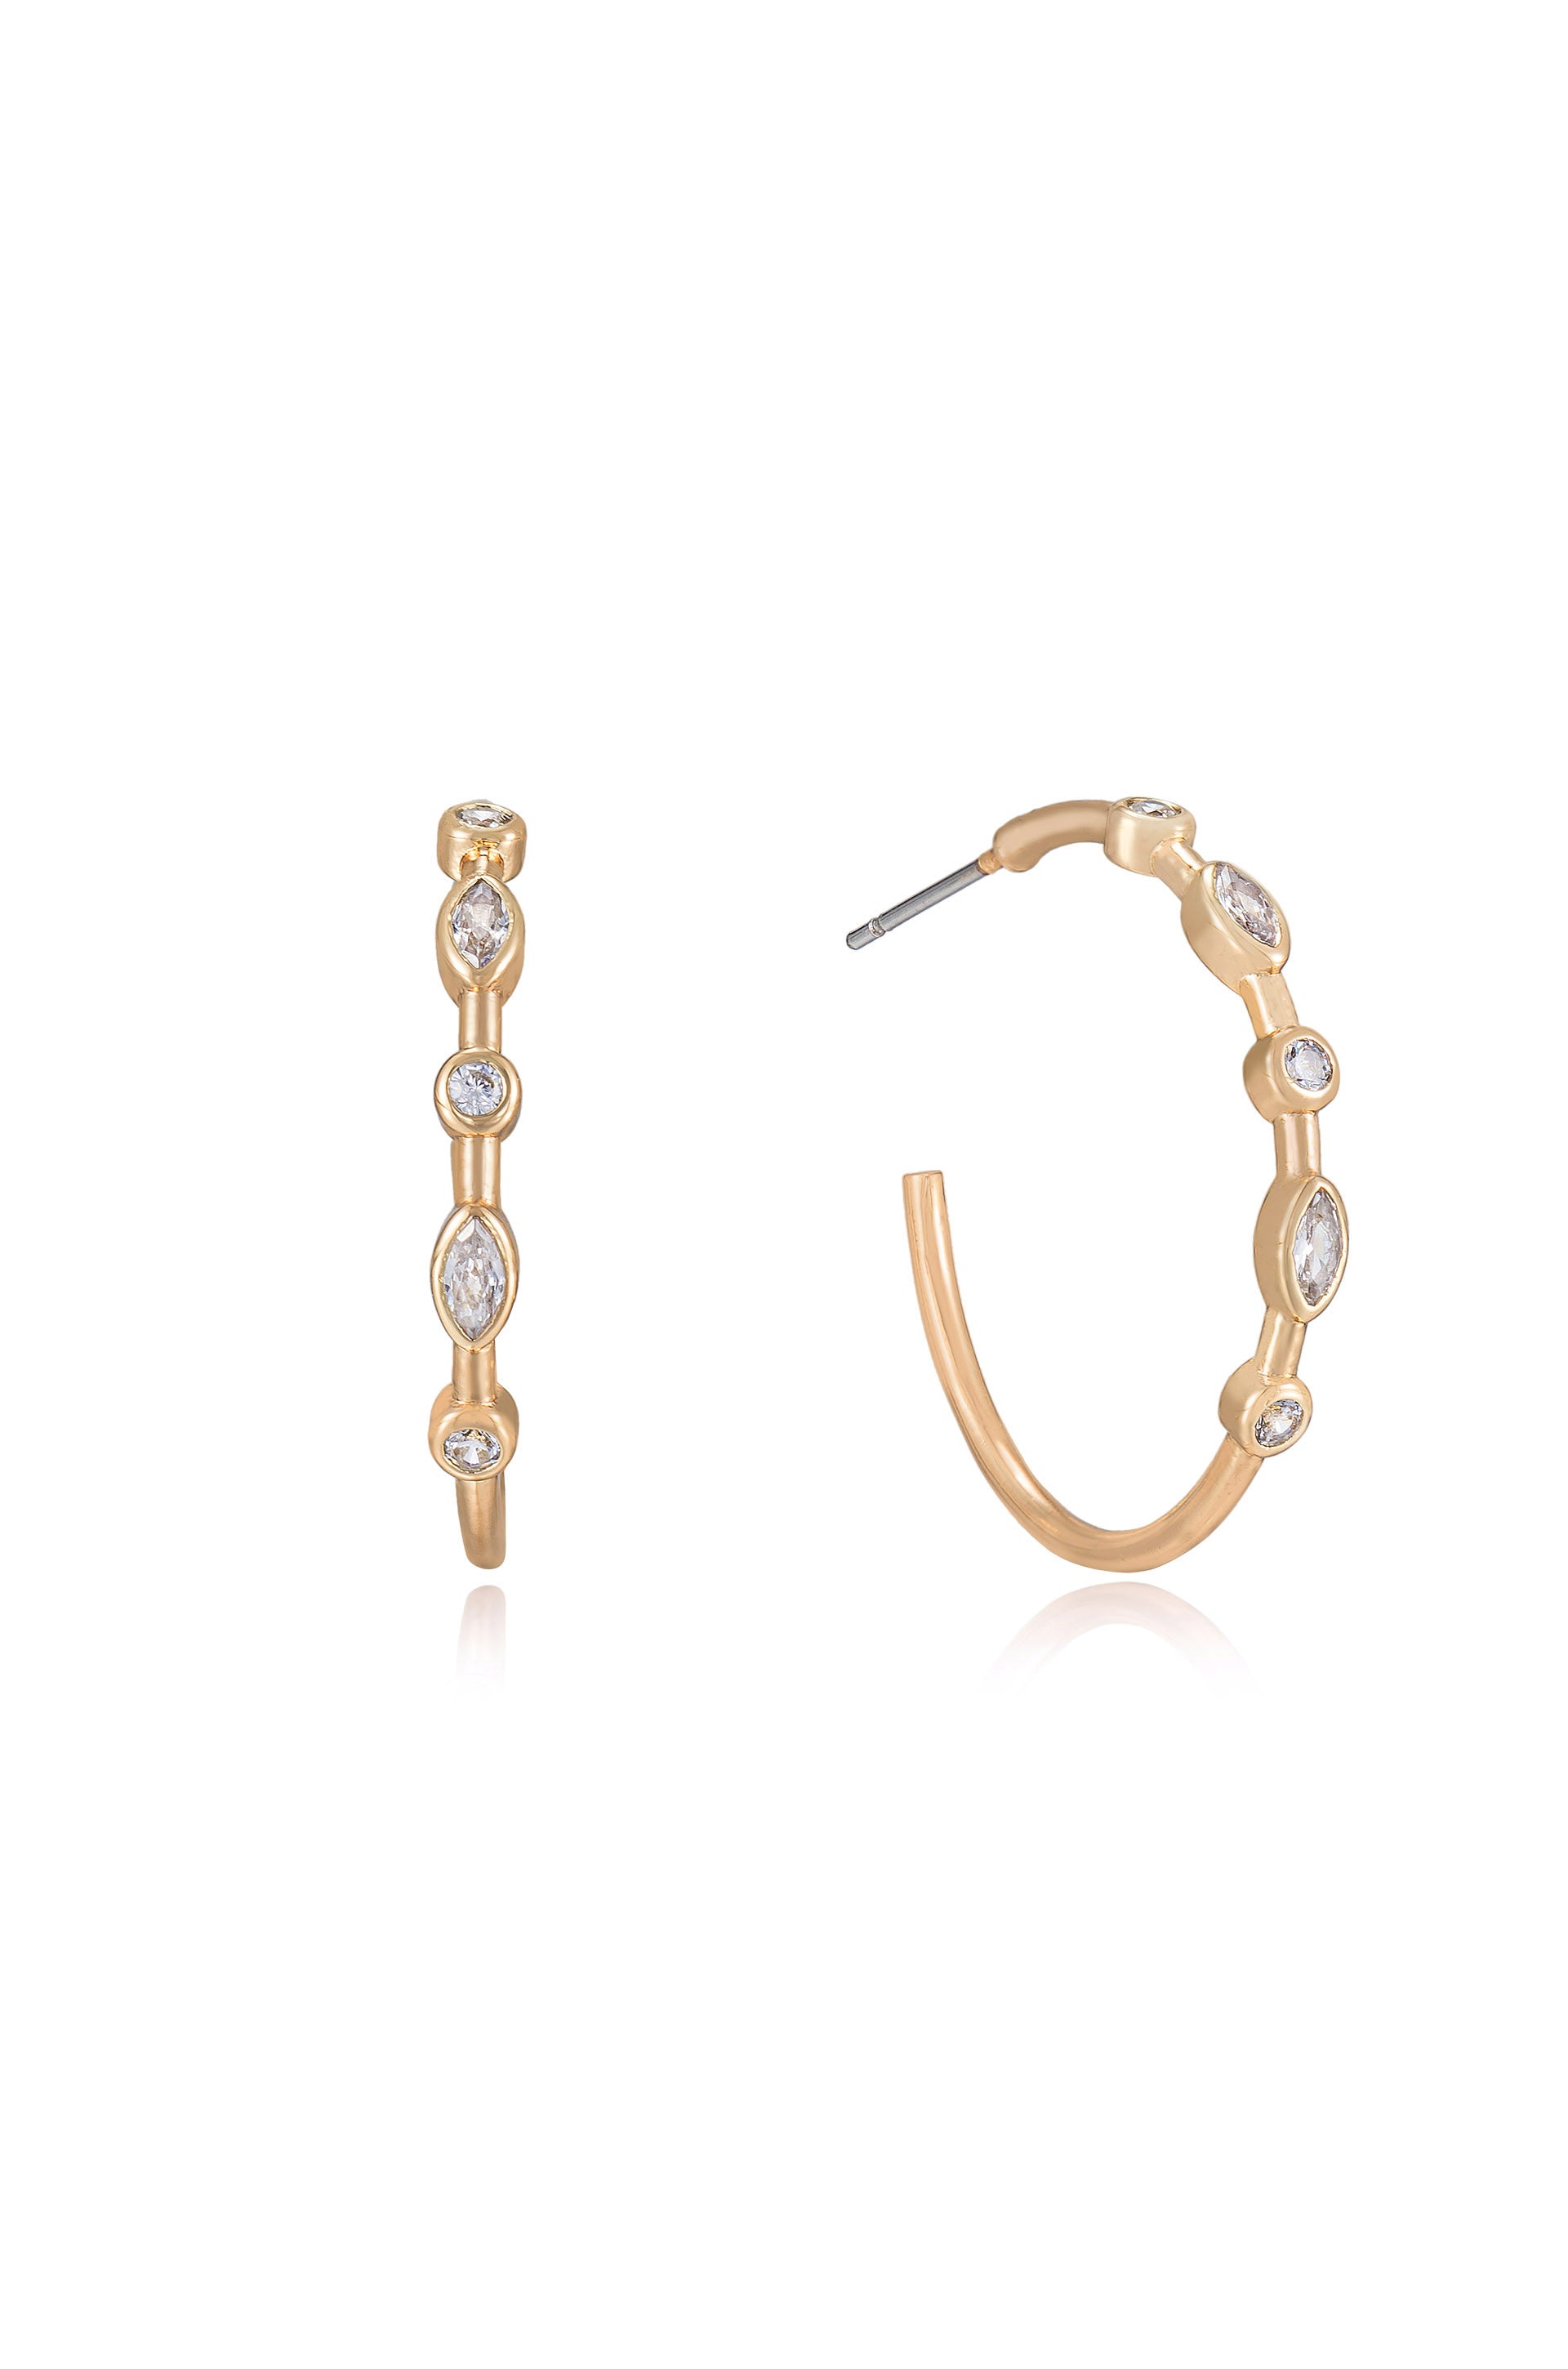 Crystal Queen 18k Gold Plated Hoop Earrings